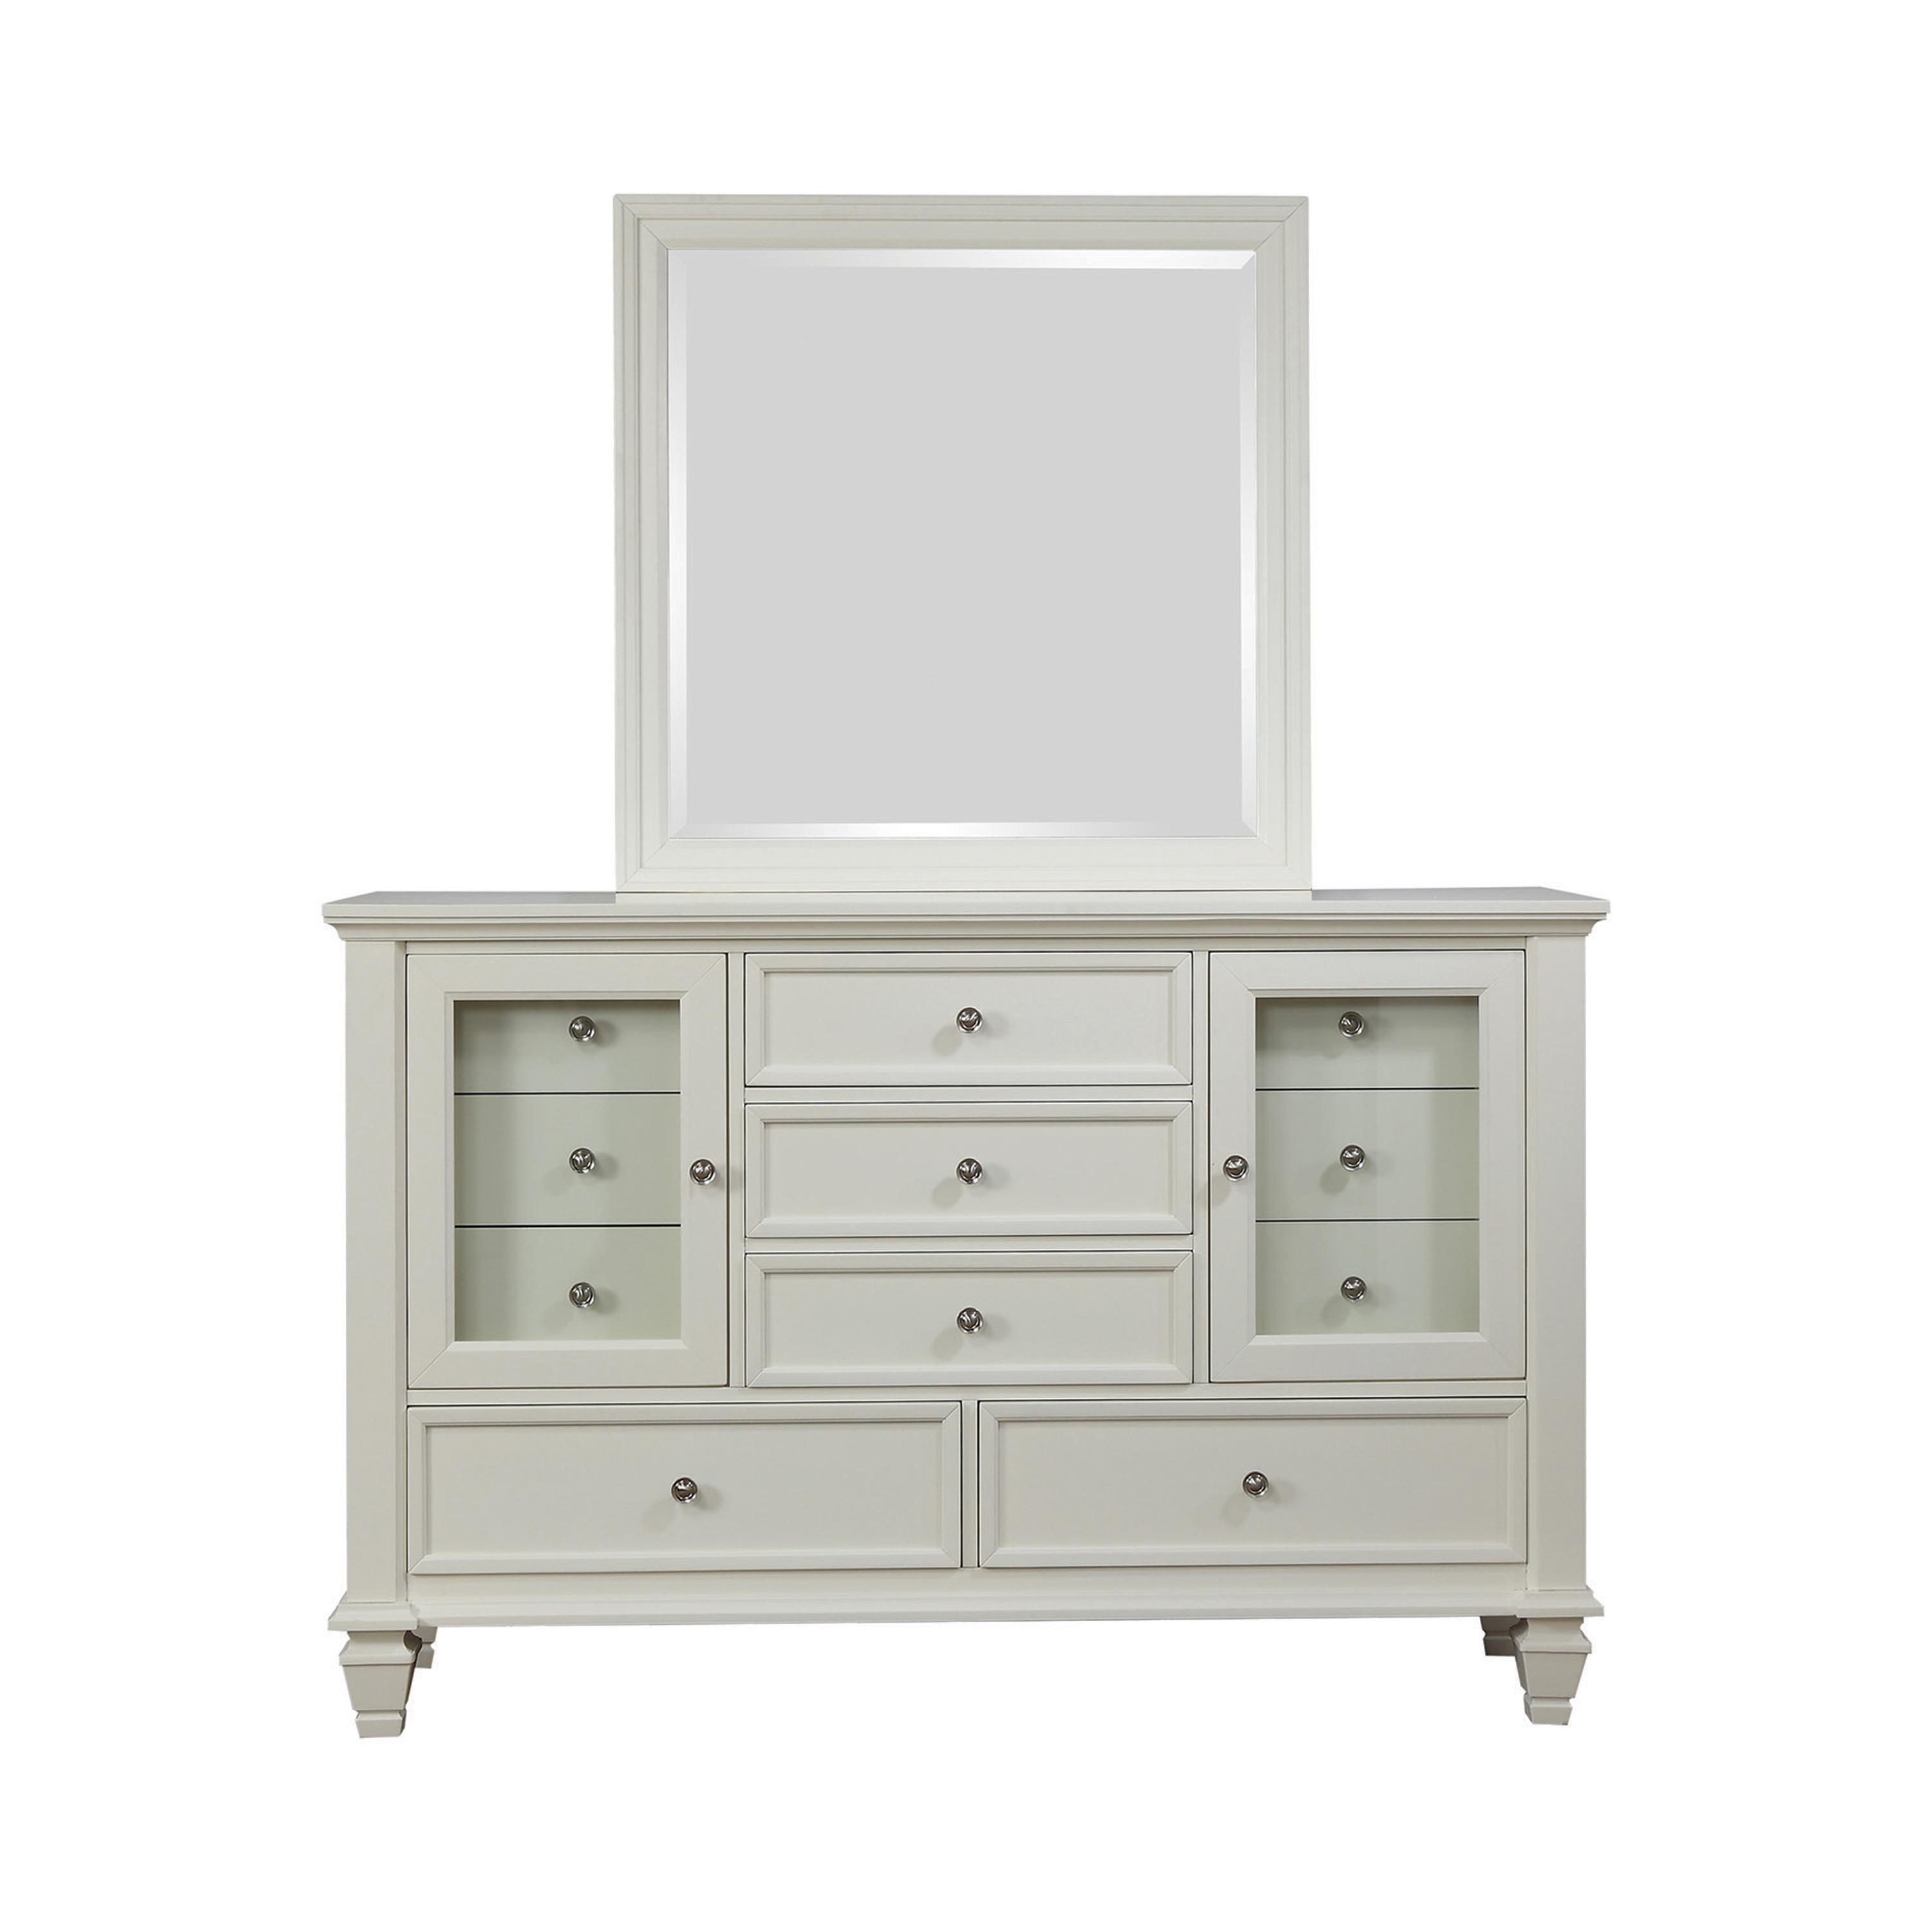 Cottage Dresser w/Mirror 201303-2PC Sandy Beach 201303-2PC in White 